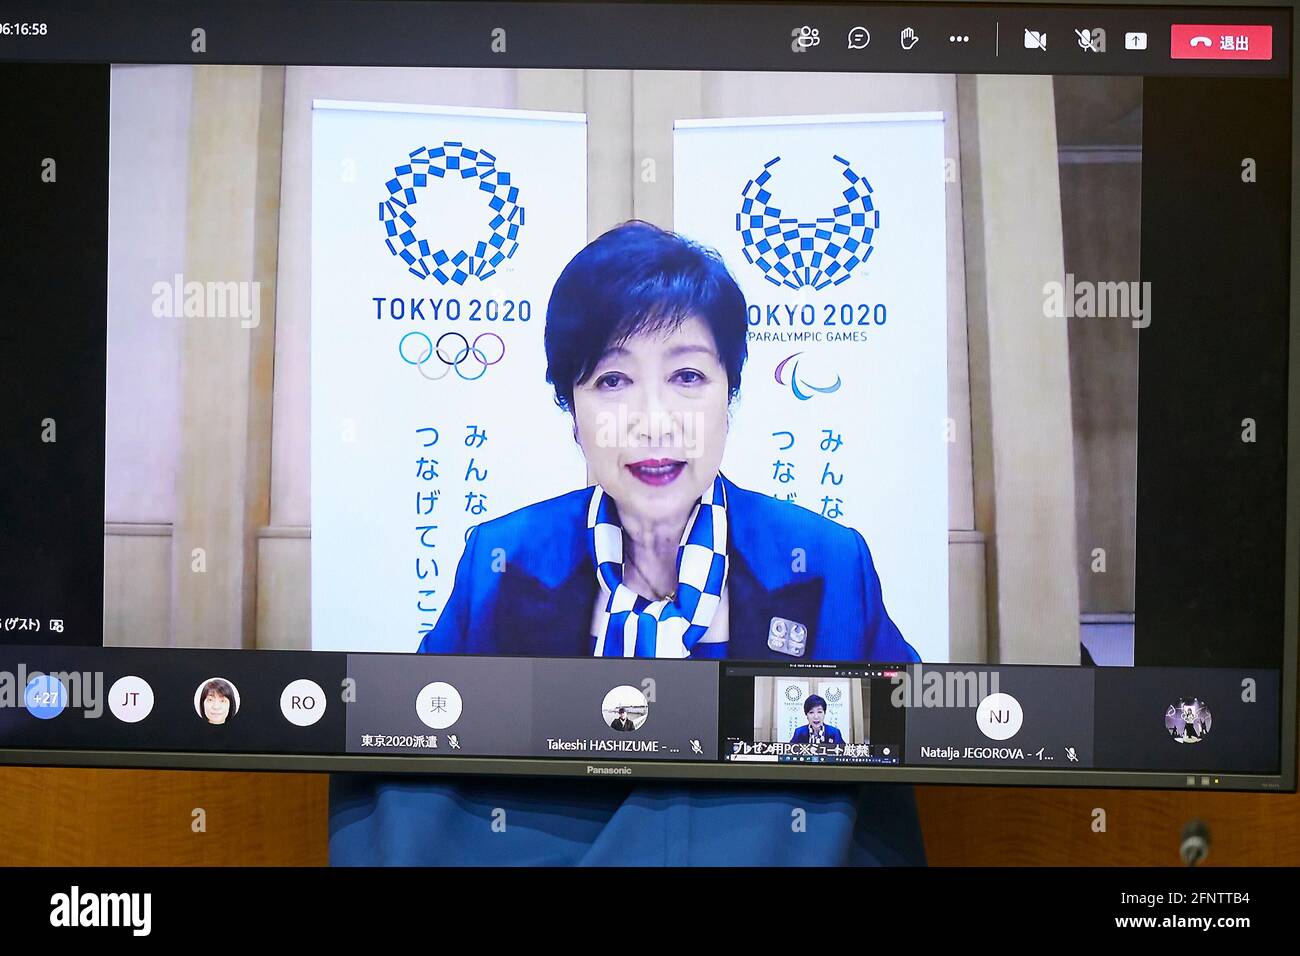 (210519) -- TOKIO, 19. Mai 2021 (Xinhua) -- Koike Yuriko, Gouverneurin von Tokio, spricht über Teams Live am 19. Mai 2021 über das Treffen der IOC-Koordinierungskommission für die Spiele der XXXII. Olympiade Tokyo 2020. (Tokio 2020/Handout über Xinhua) Stockfoto